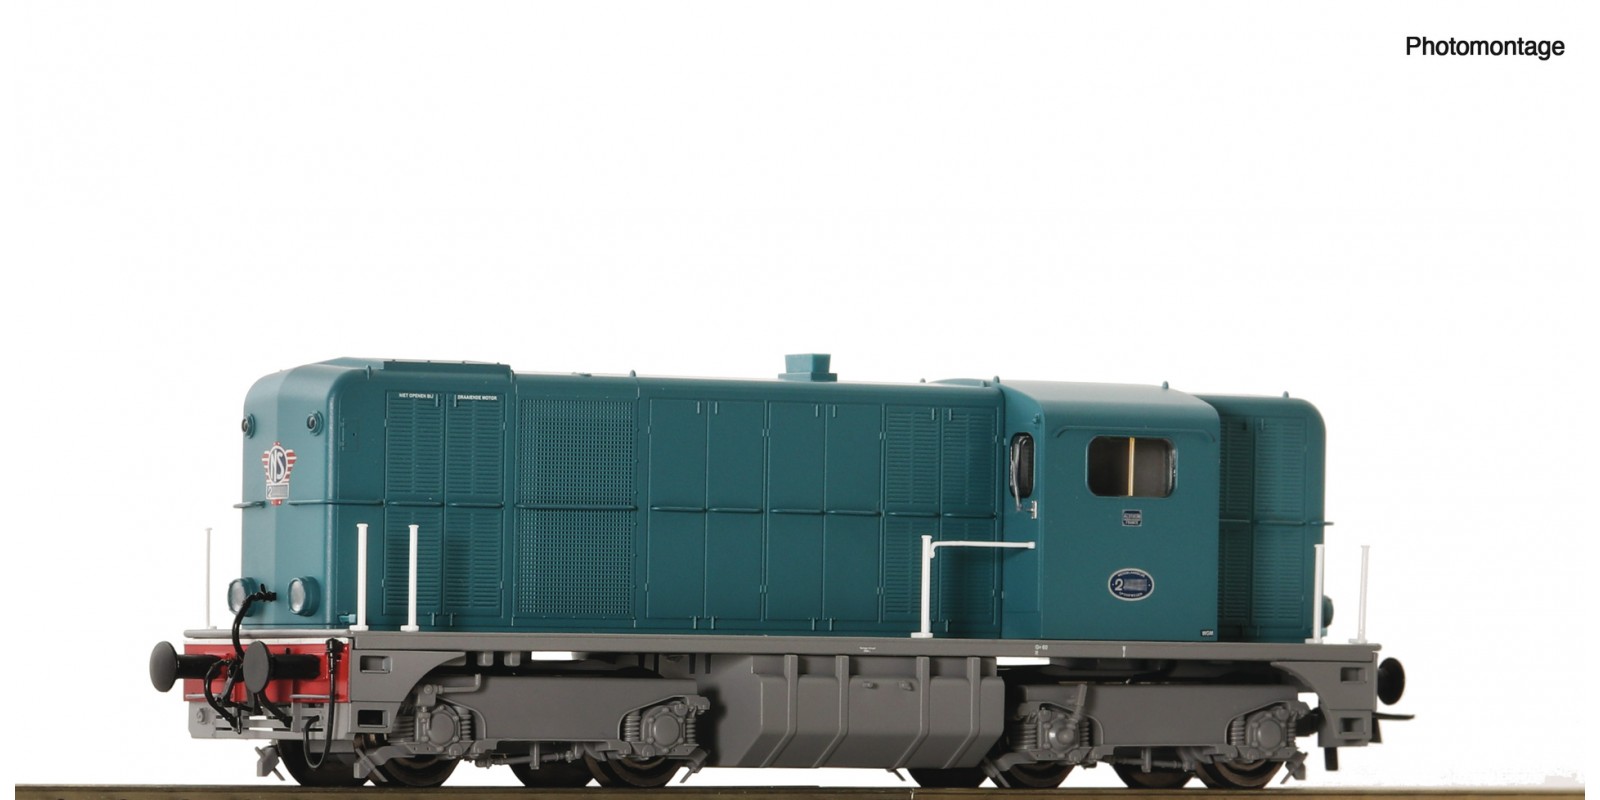 RO7320007 Diesel locomotive 2415, N S                        